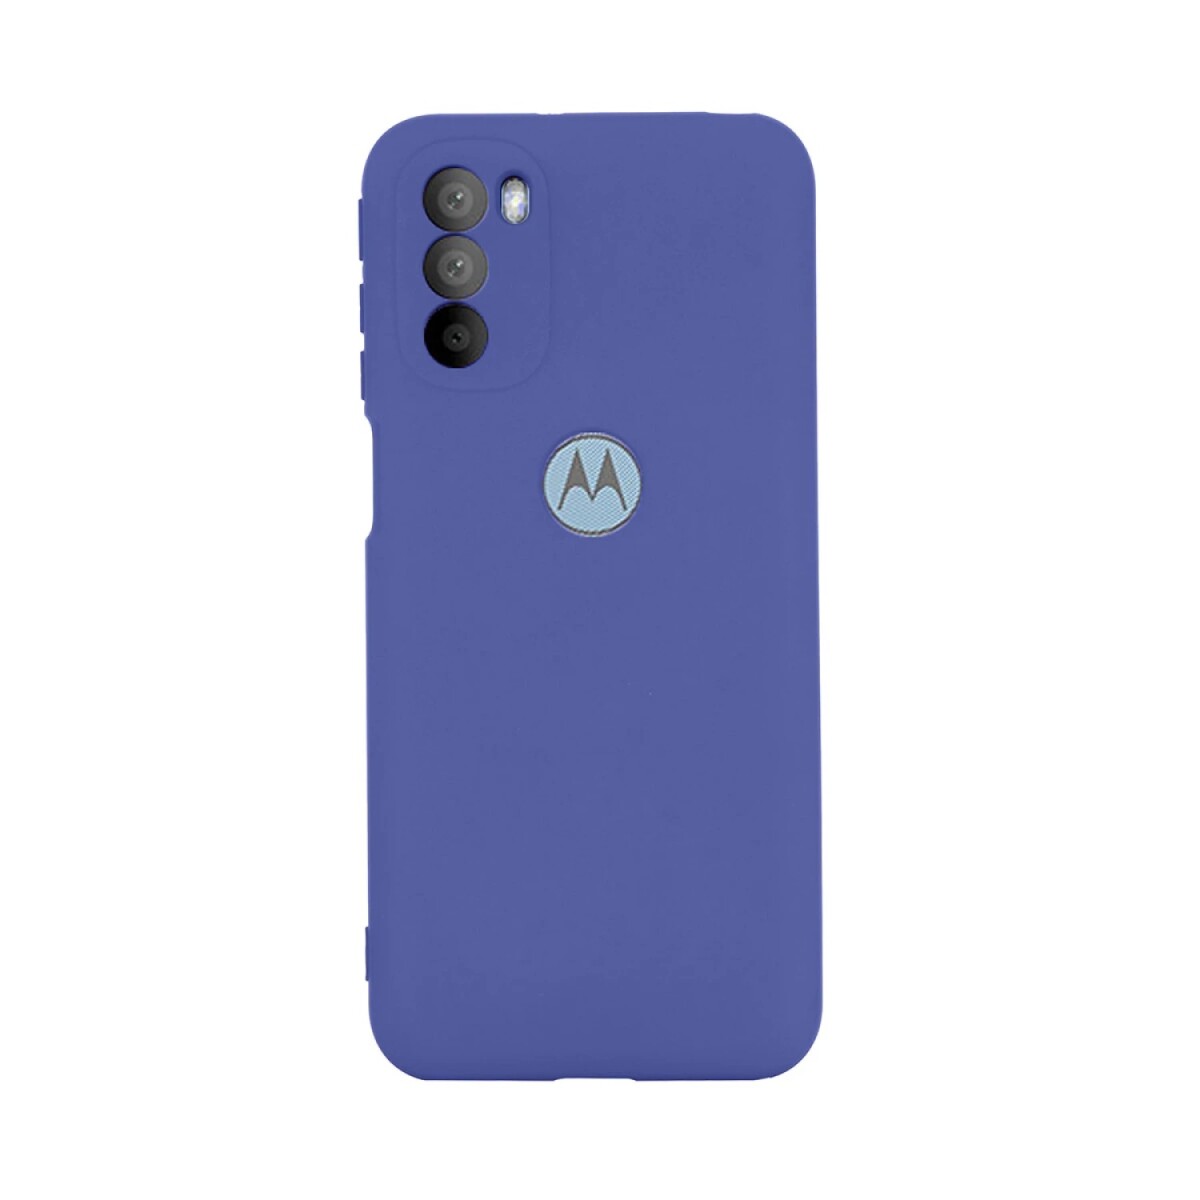 Protector Funda Case de Silicona para Motorola Moto G51 - Azul 